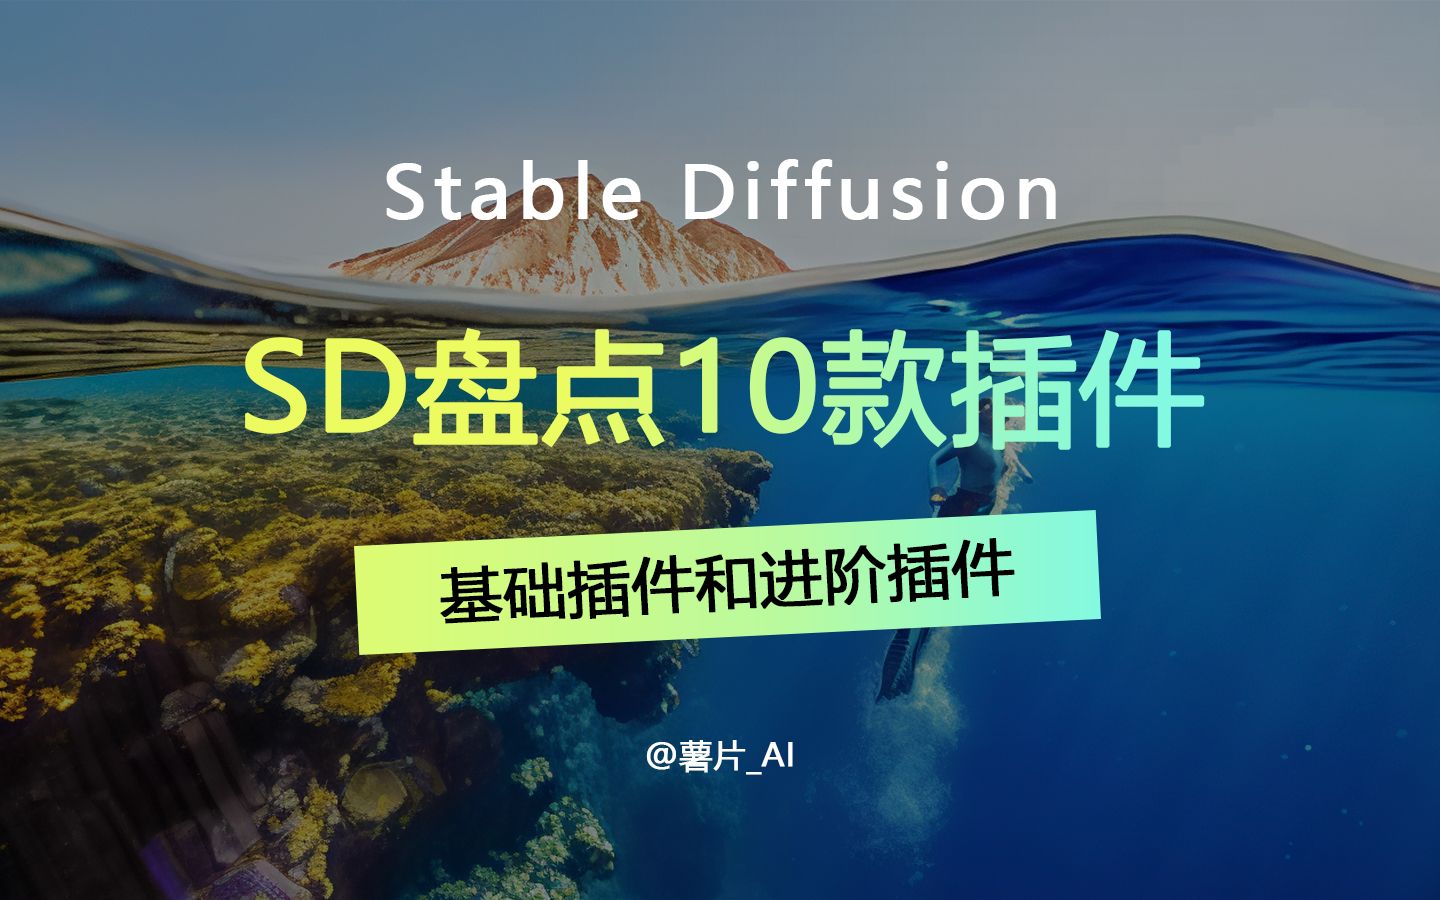 10款插件丰富你的sd功能，sd插件盘点第一期#stablediffusion教程